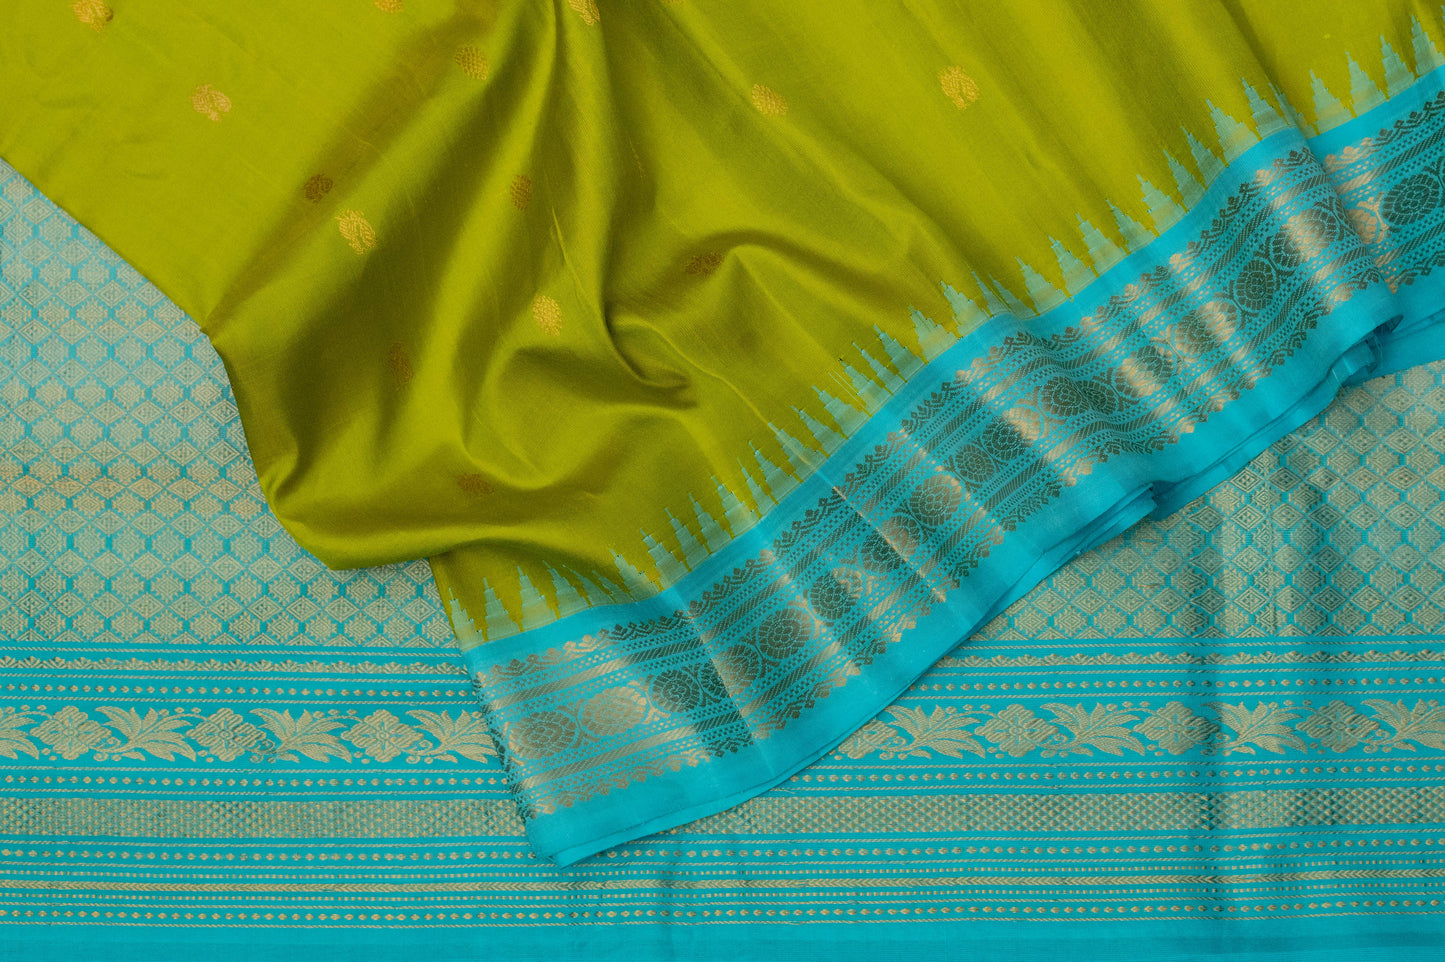 Handwowen Pure Silk Gadwal Saree in Light Blue